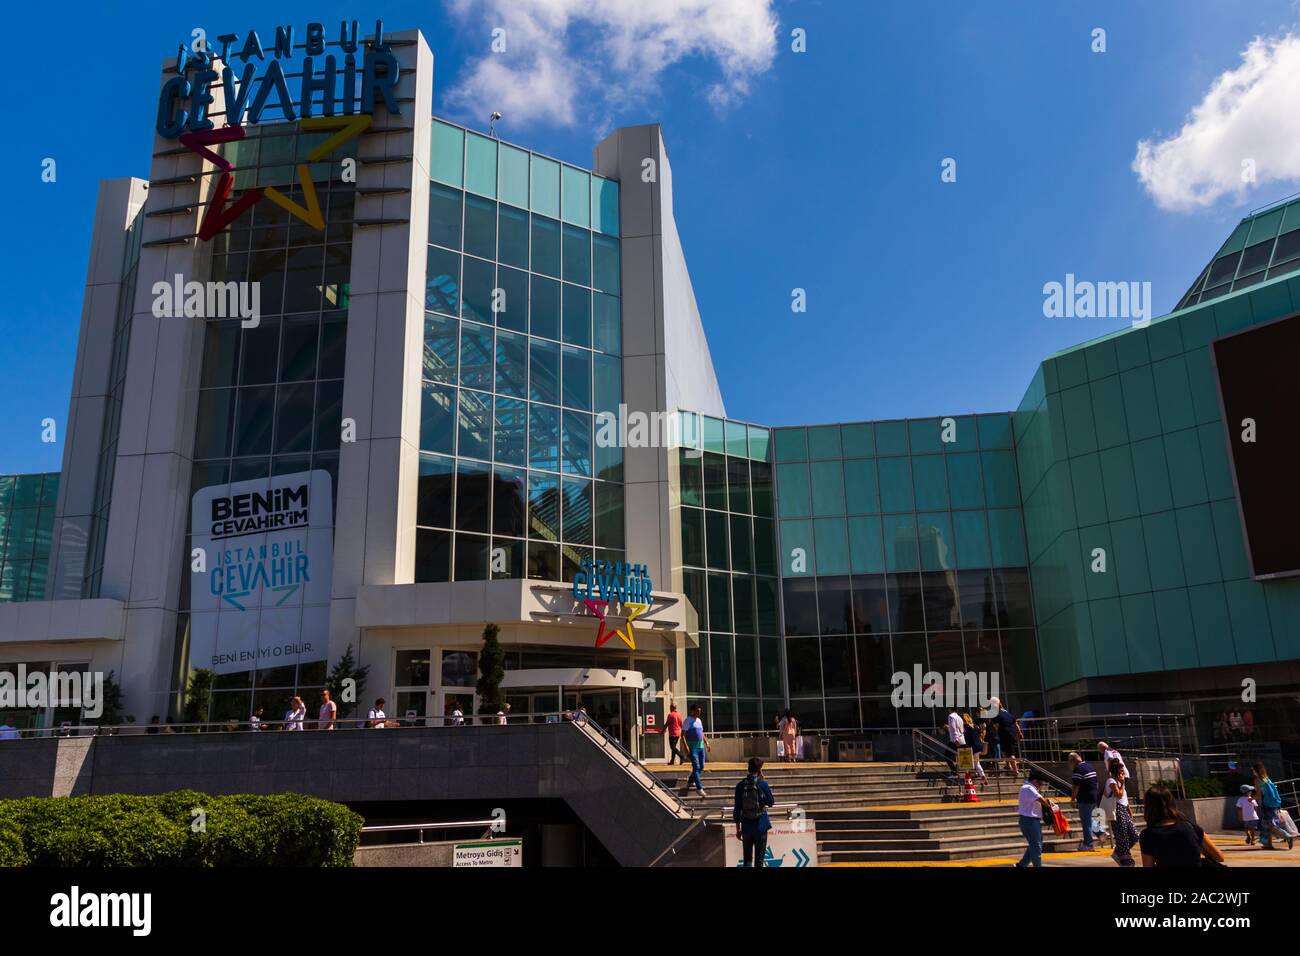 27 août 2019, Istanbul, Turquie ; entrée principale du centre commercial Cevahir sur un jour lumineux Banque D'Images